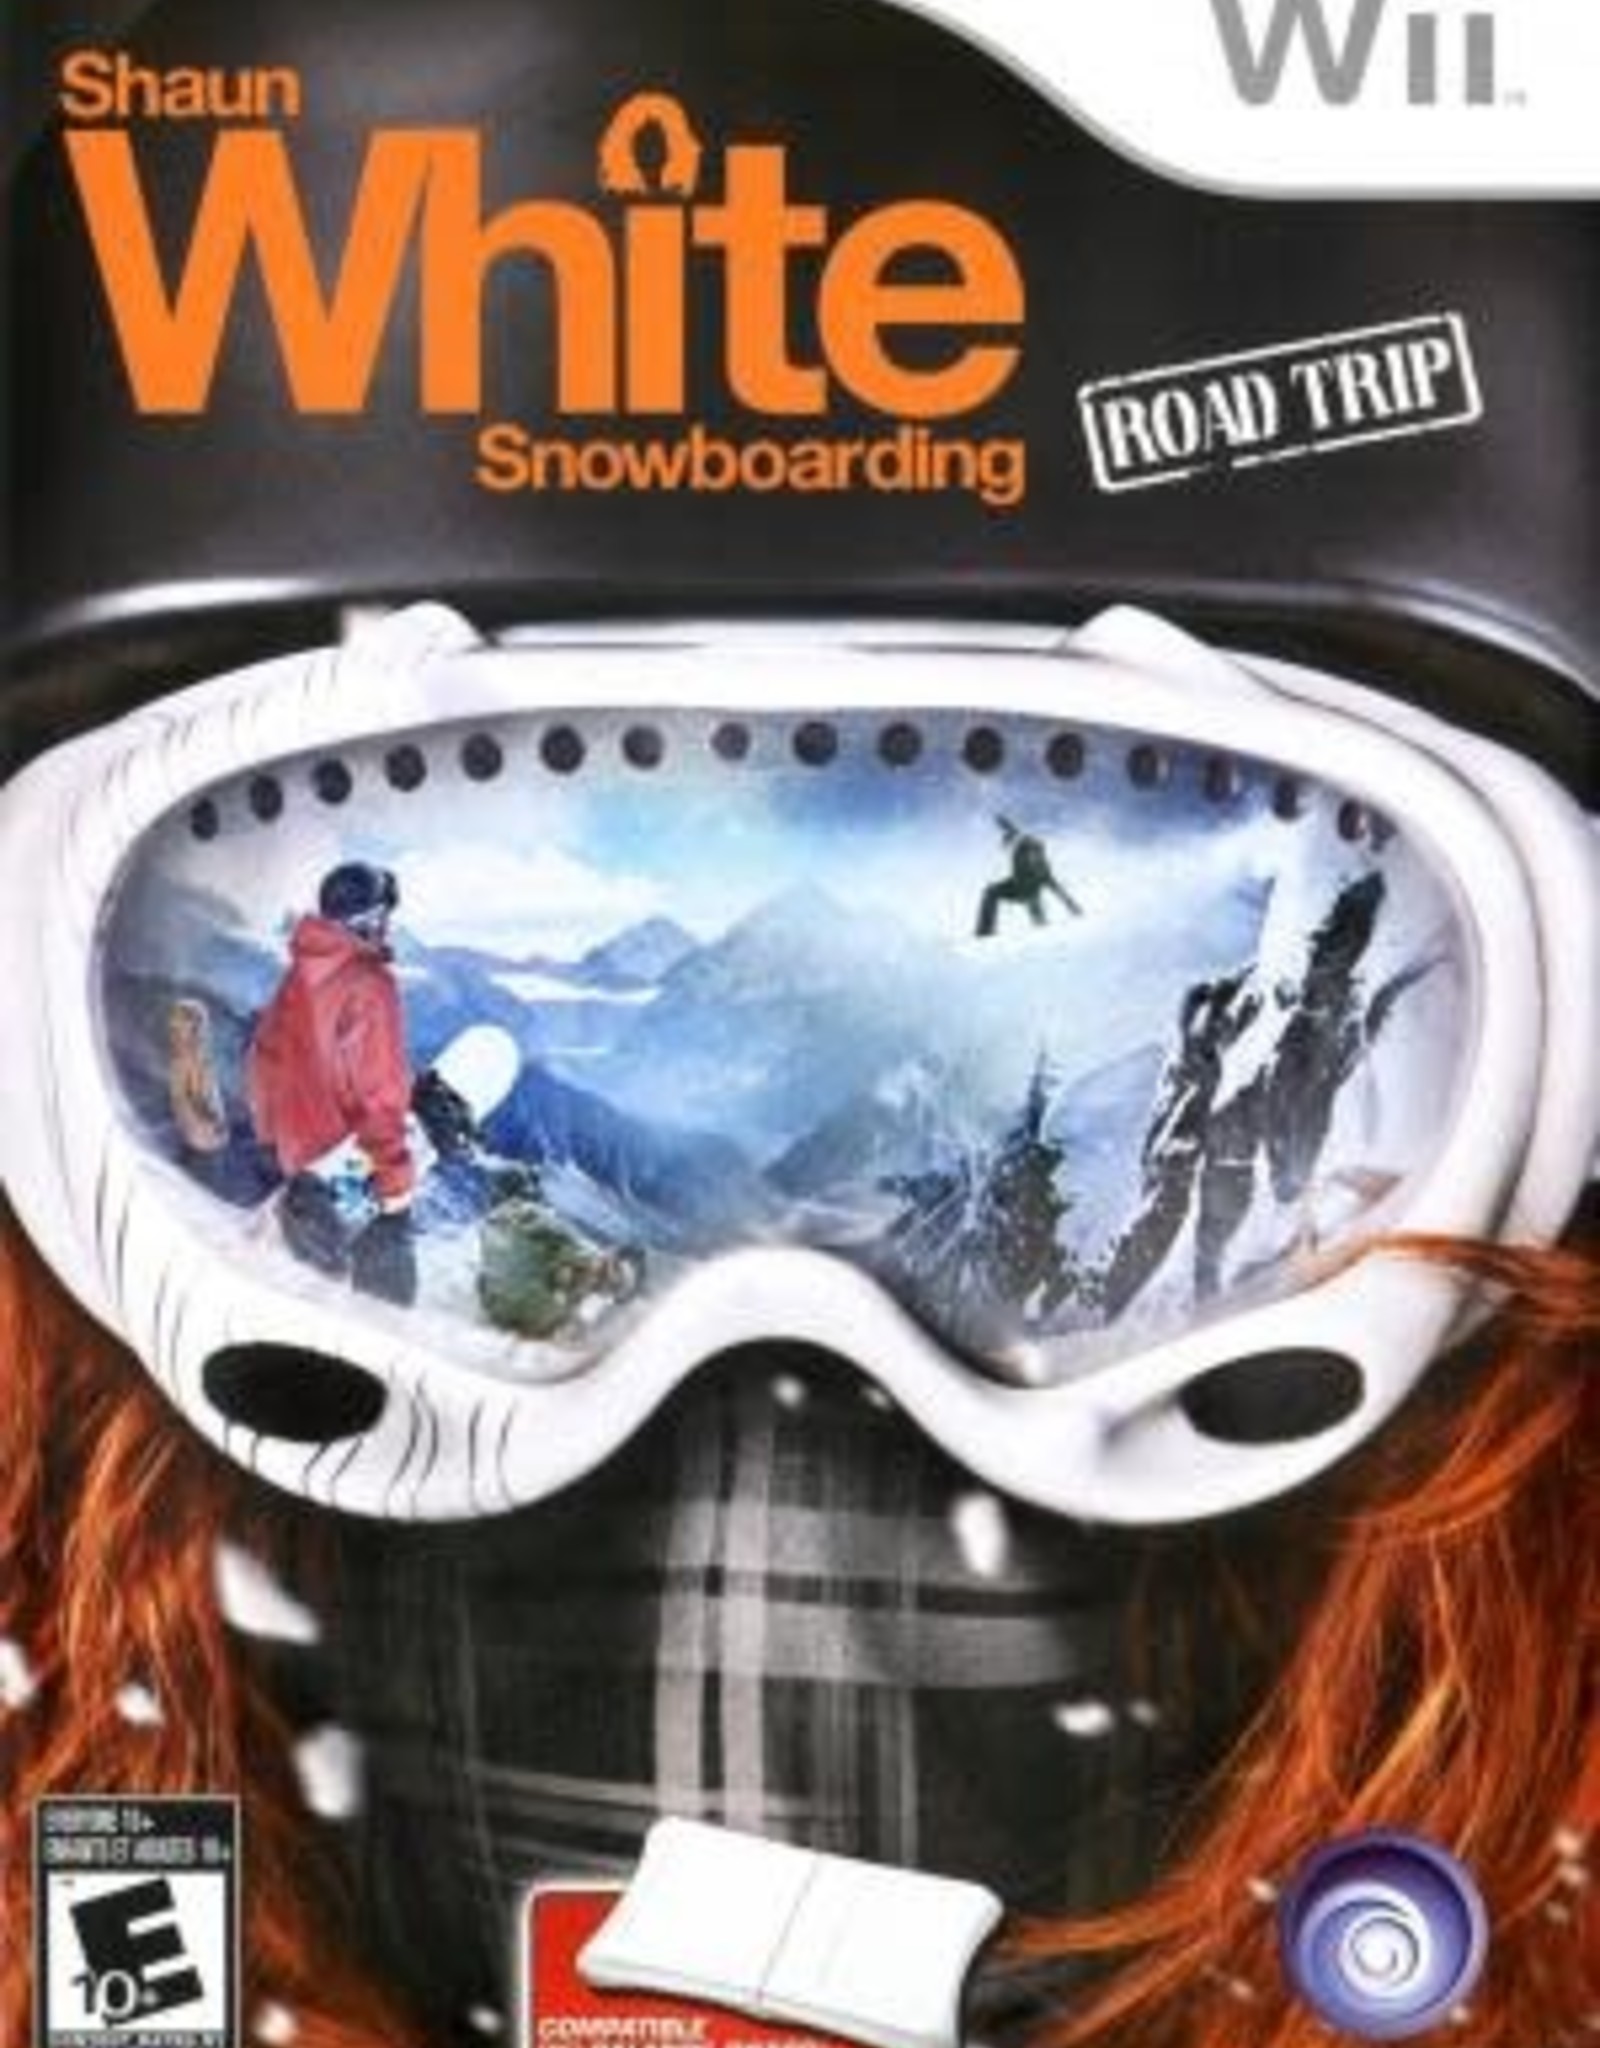 shaun white snowboarding xbox one